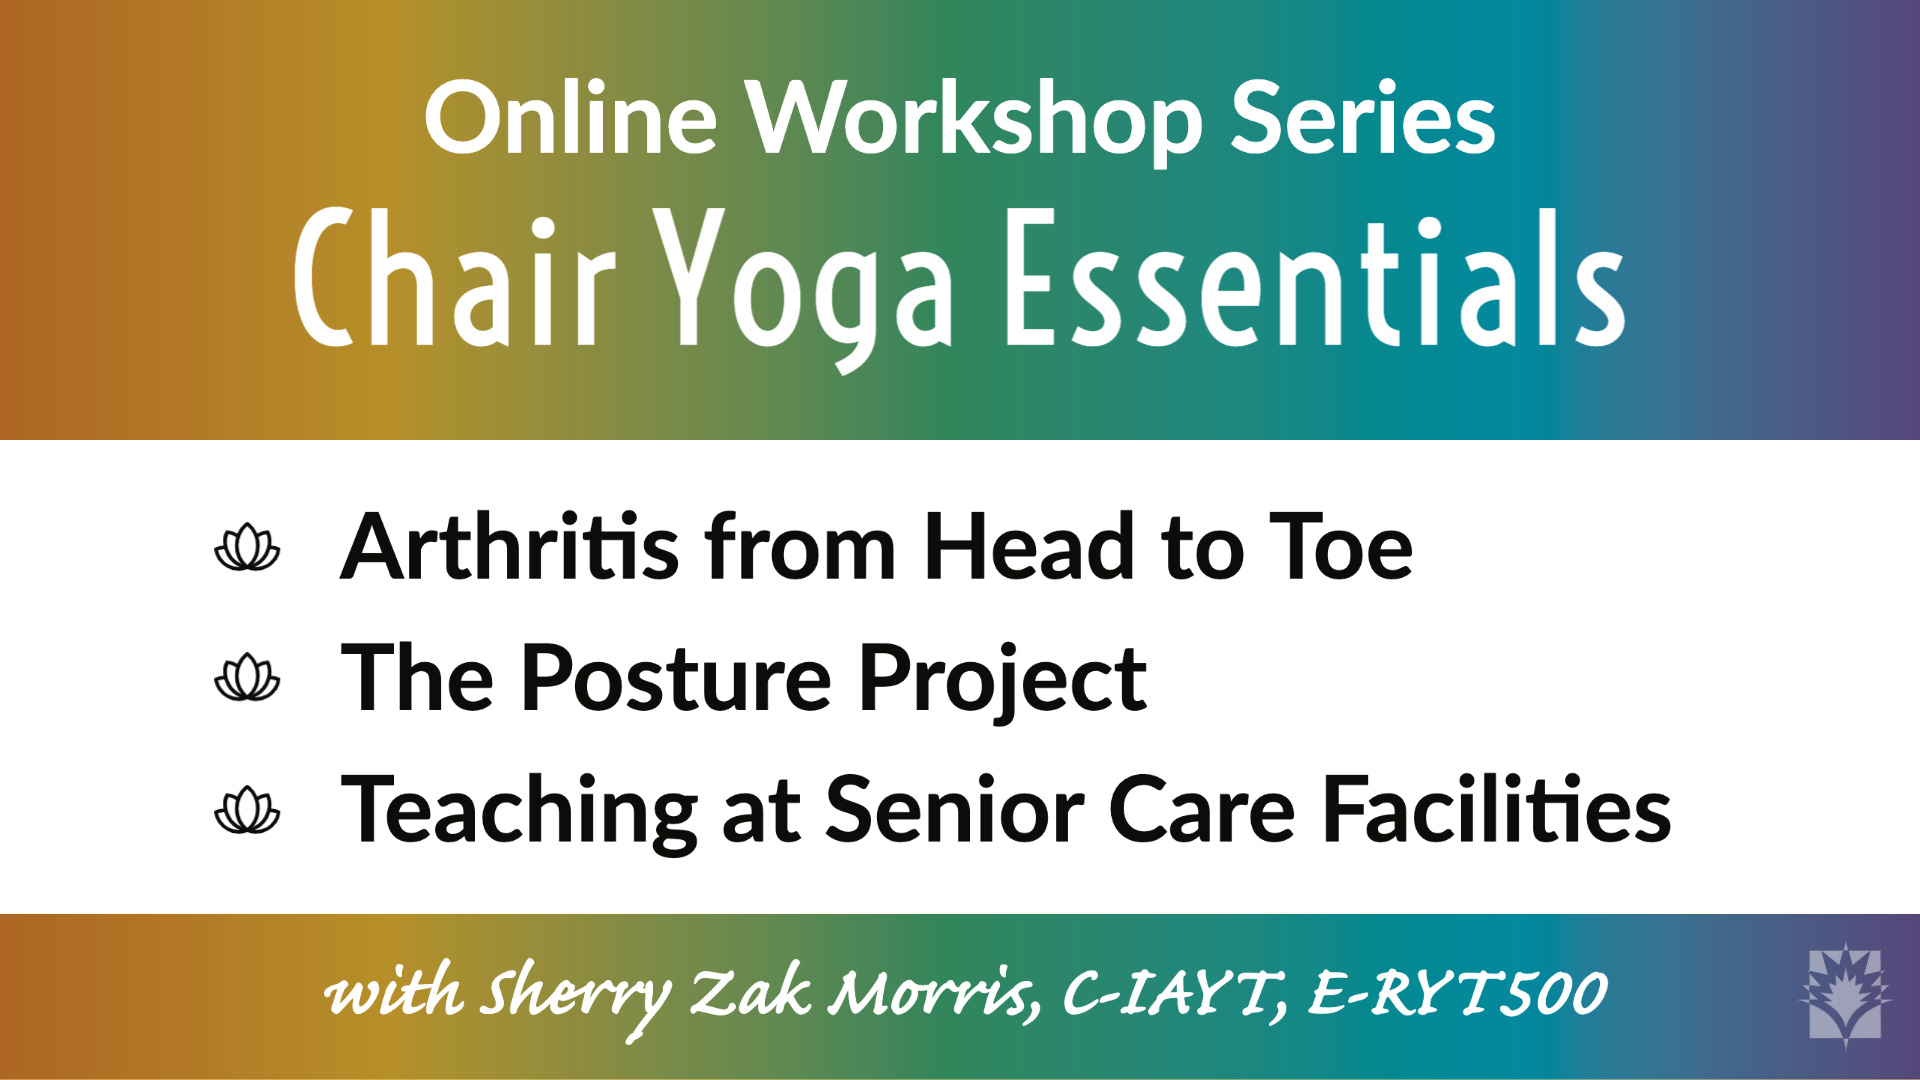 Chair Yoga Essentials: Online Workshop Series - Yoga Vista Academy